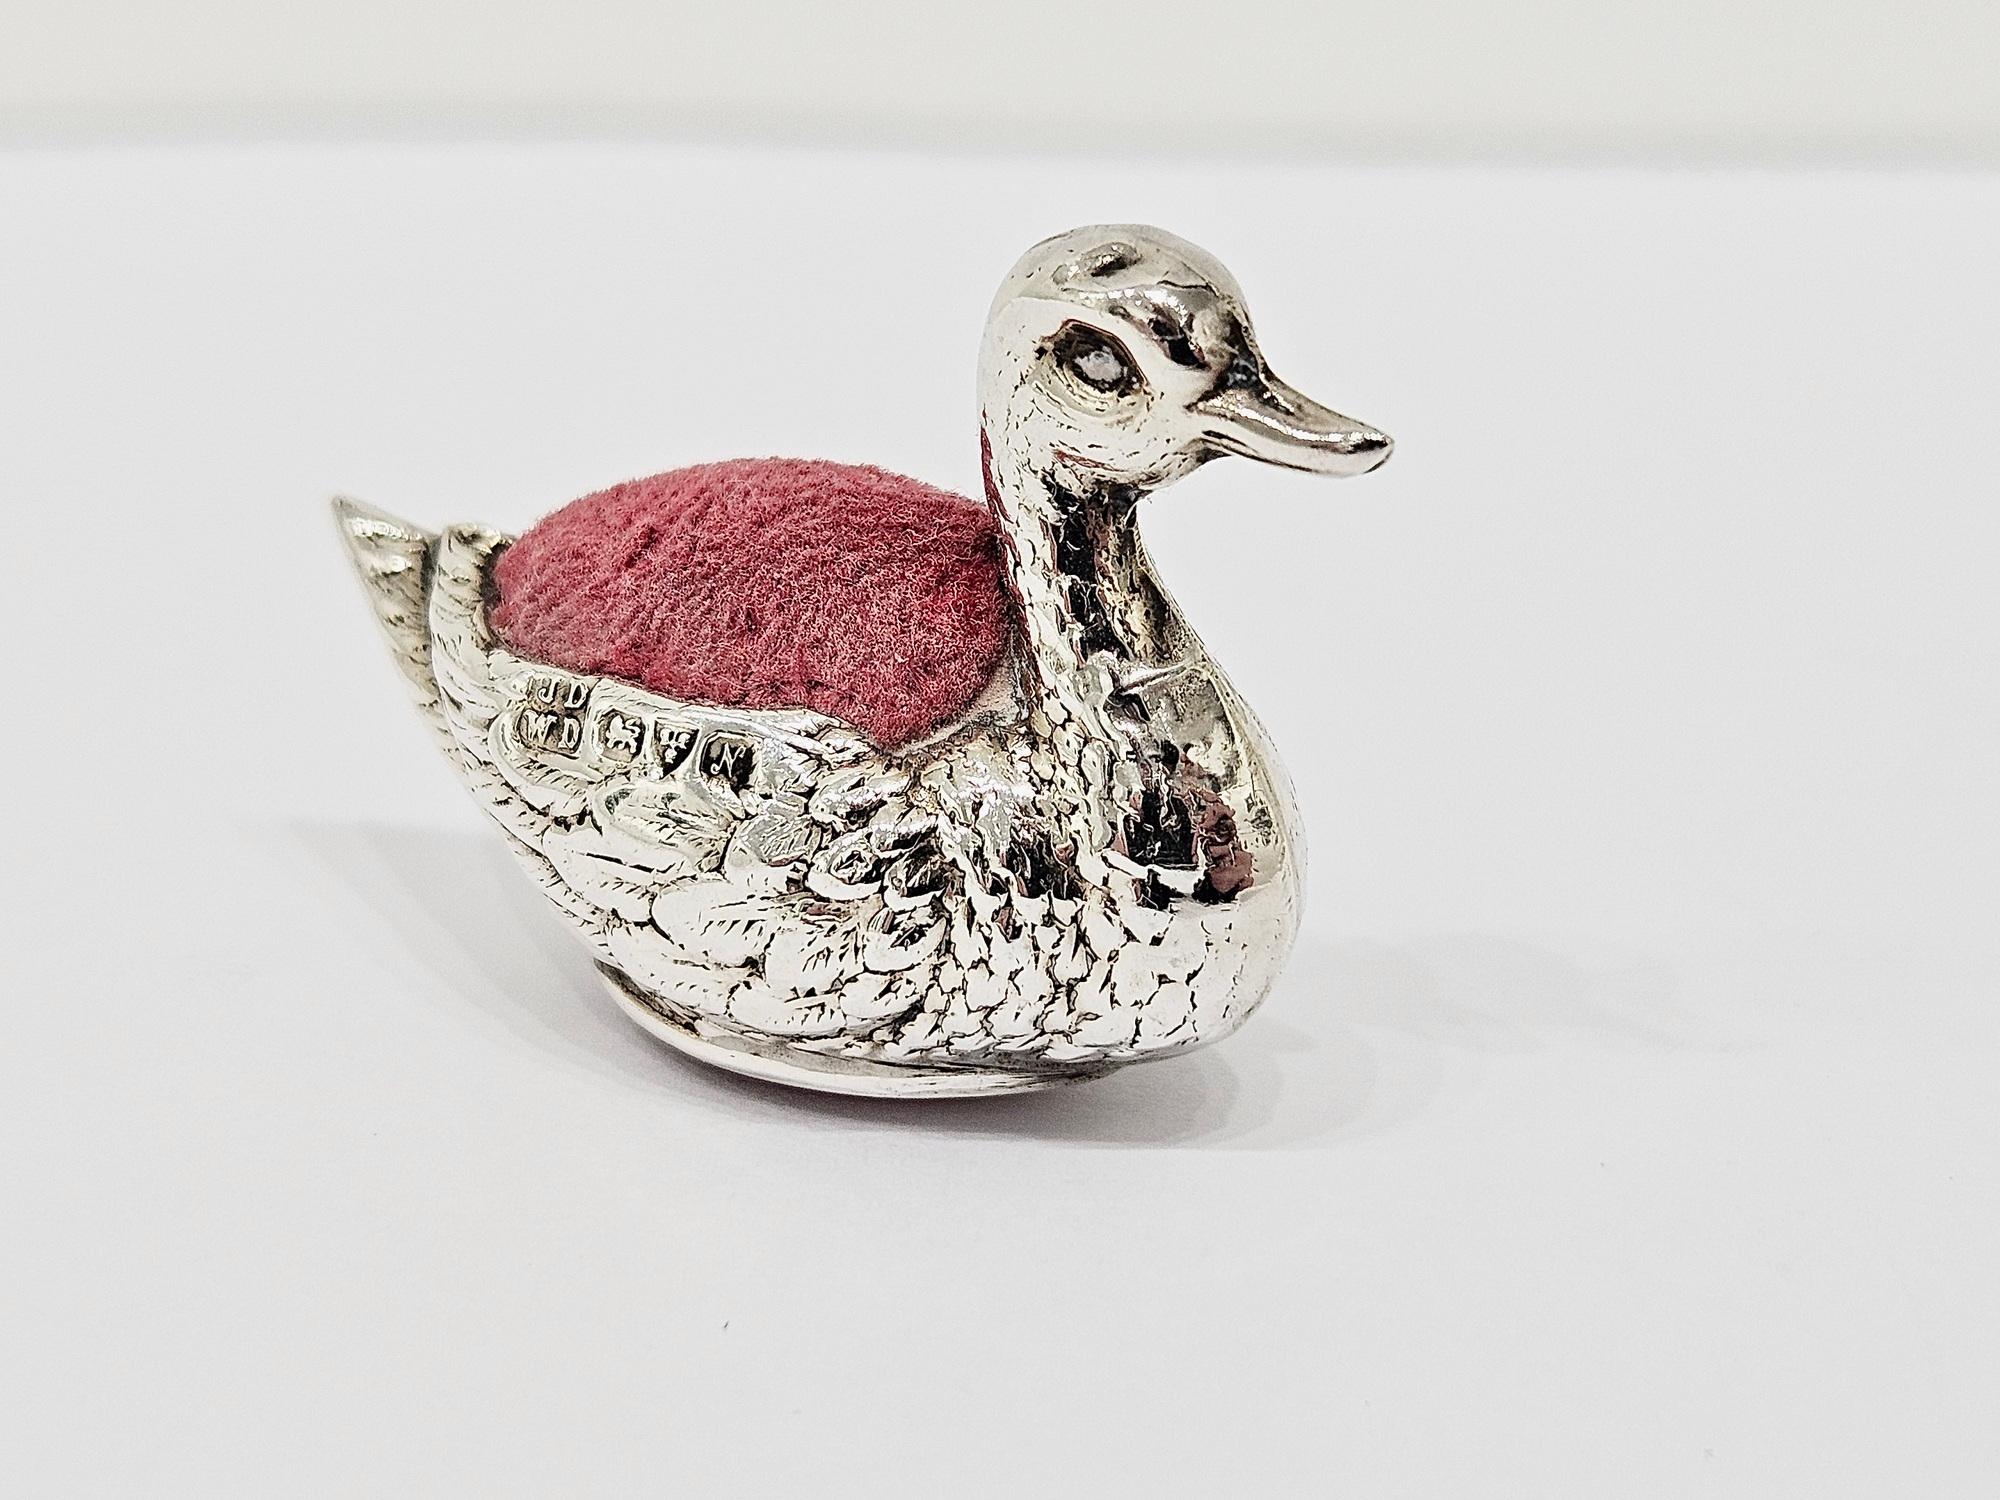 Coussin à épingles en argent de style édouardien, représentant de manière réaliste un canard miniature, avec coussin et base en velours rouge. Les poinçons sont parfaitement clairs et indiquent que l'objet a été fabriqué par James Deakin & Sons